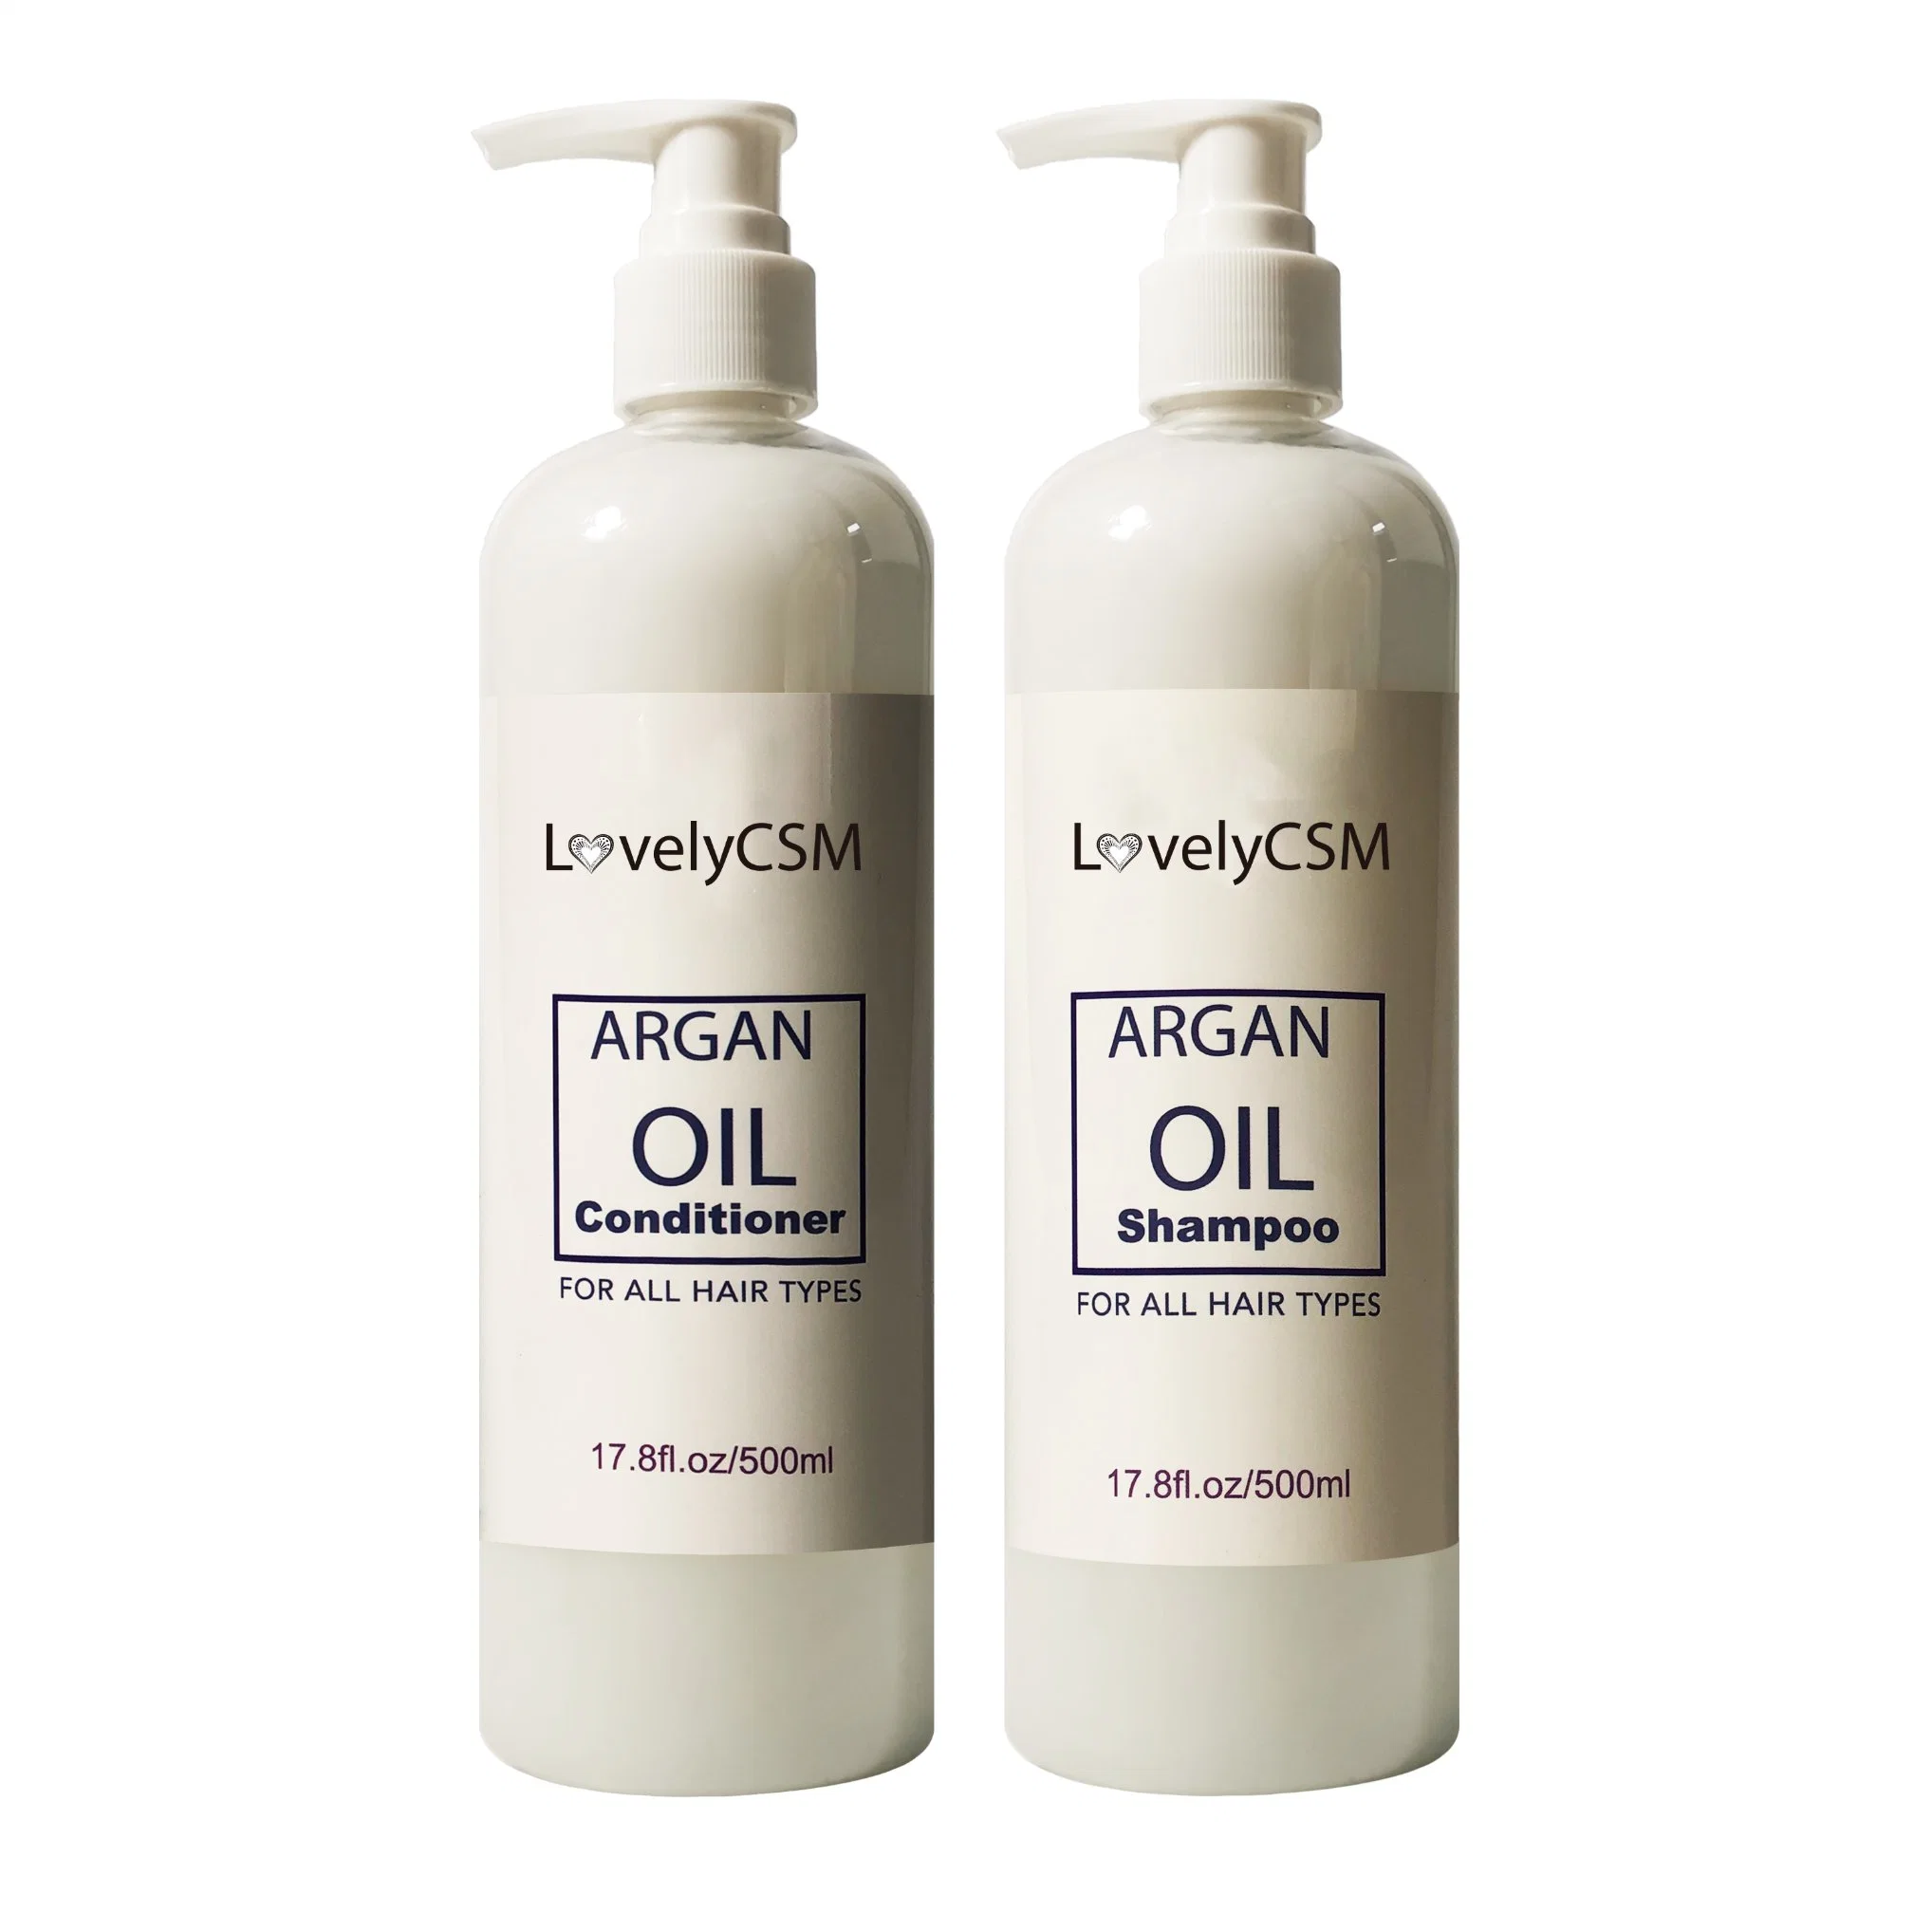 Aixin Pure Organic Arganöl Haarshampoo und Conditioner für beschädigte, trockene, lockige oder krauses Haar Arganöl Haarwachstum Shampoo und Conditioner Private Label